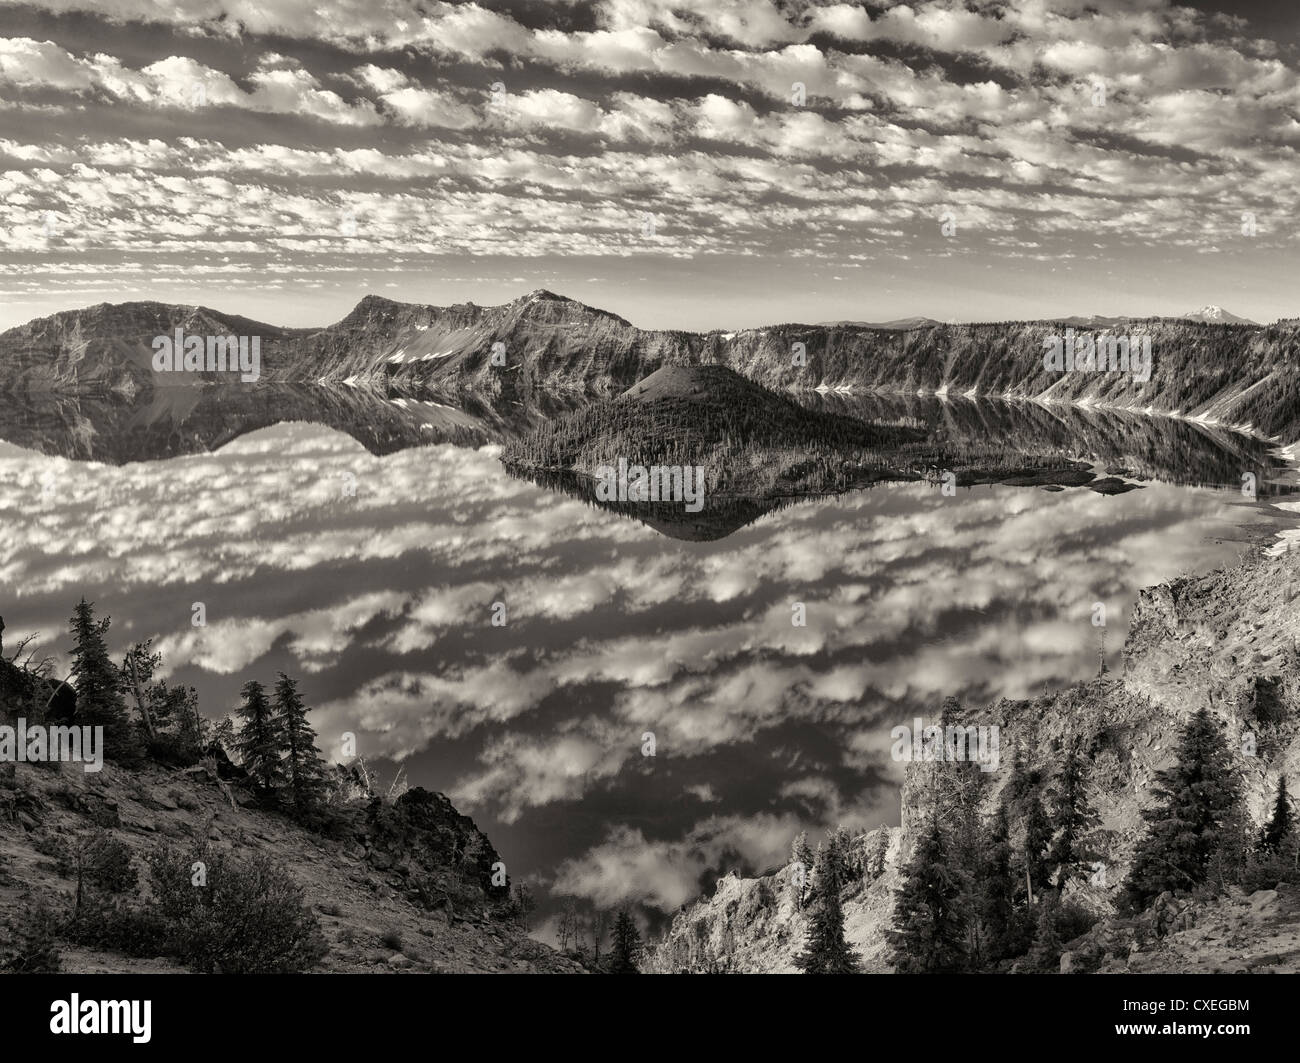 La réflexion des nuages gonflés, le lac du cratère et de l'île de l'Assistant. Crater Lake National Park, Oregon Banque D'Images